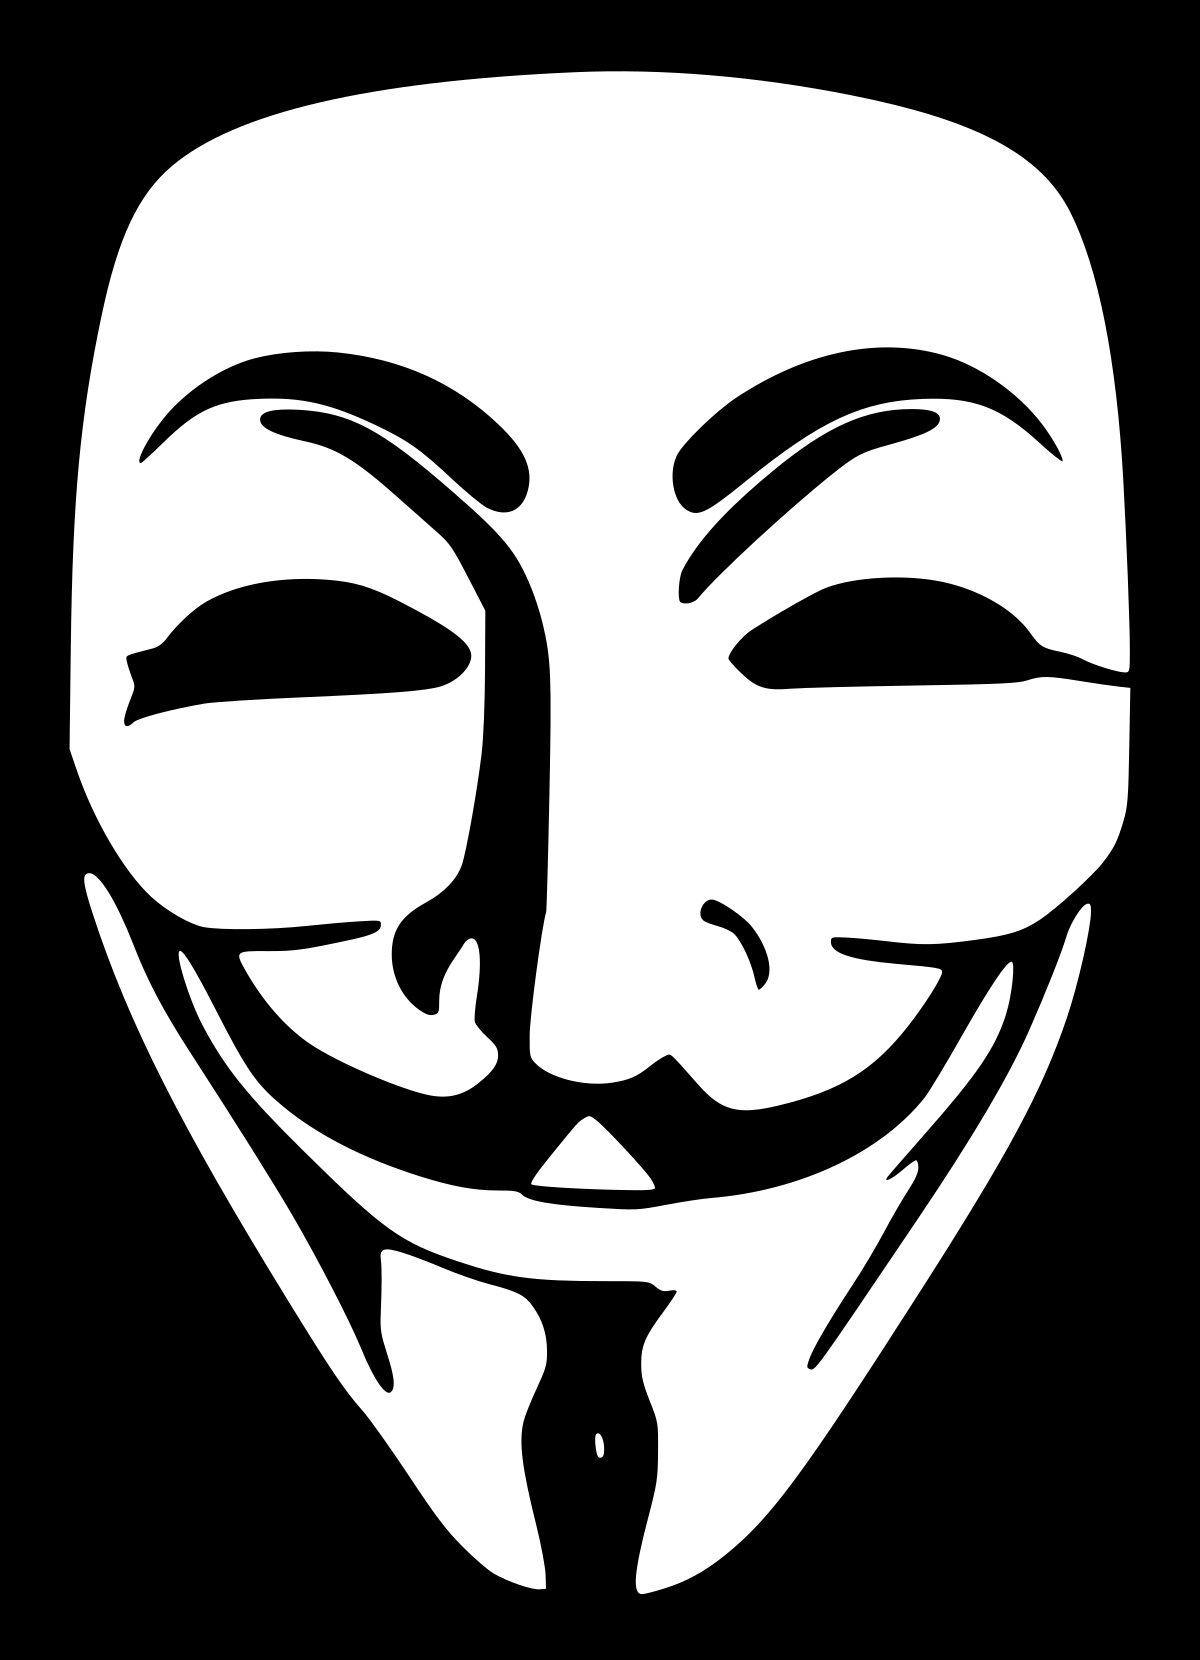 Darknet anonymous hyrda вход тор браузер на мак скачать бесплатно вход на гидру